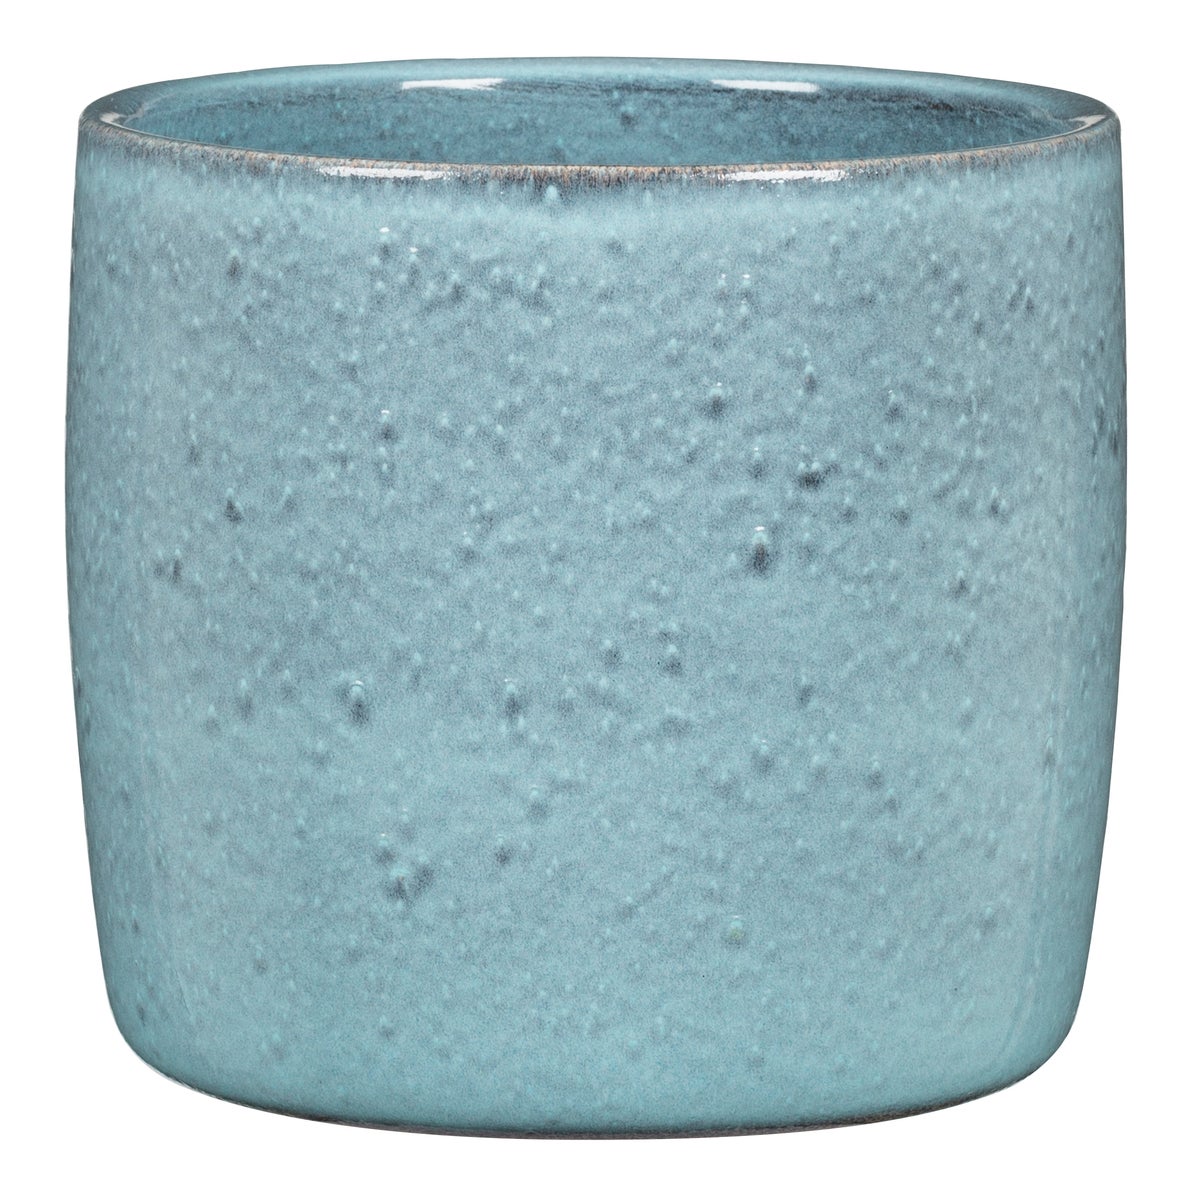 Scheurich Solido, Blumentopf aus Keramik,  Farbe: Lagoon, 15 cm Durchmesser, 13,7 cm hoch, 1,9 l Vol.